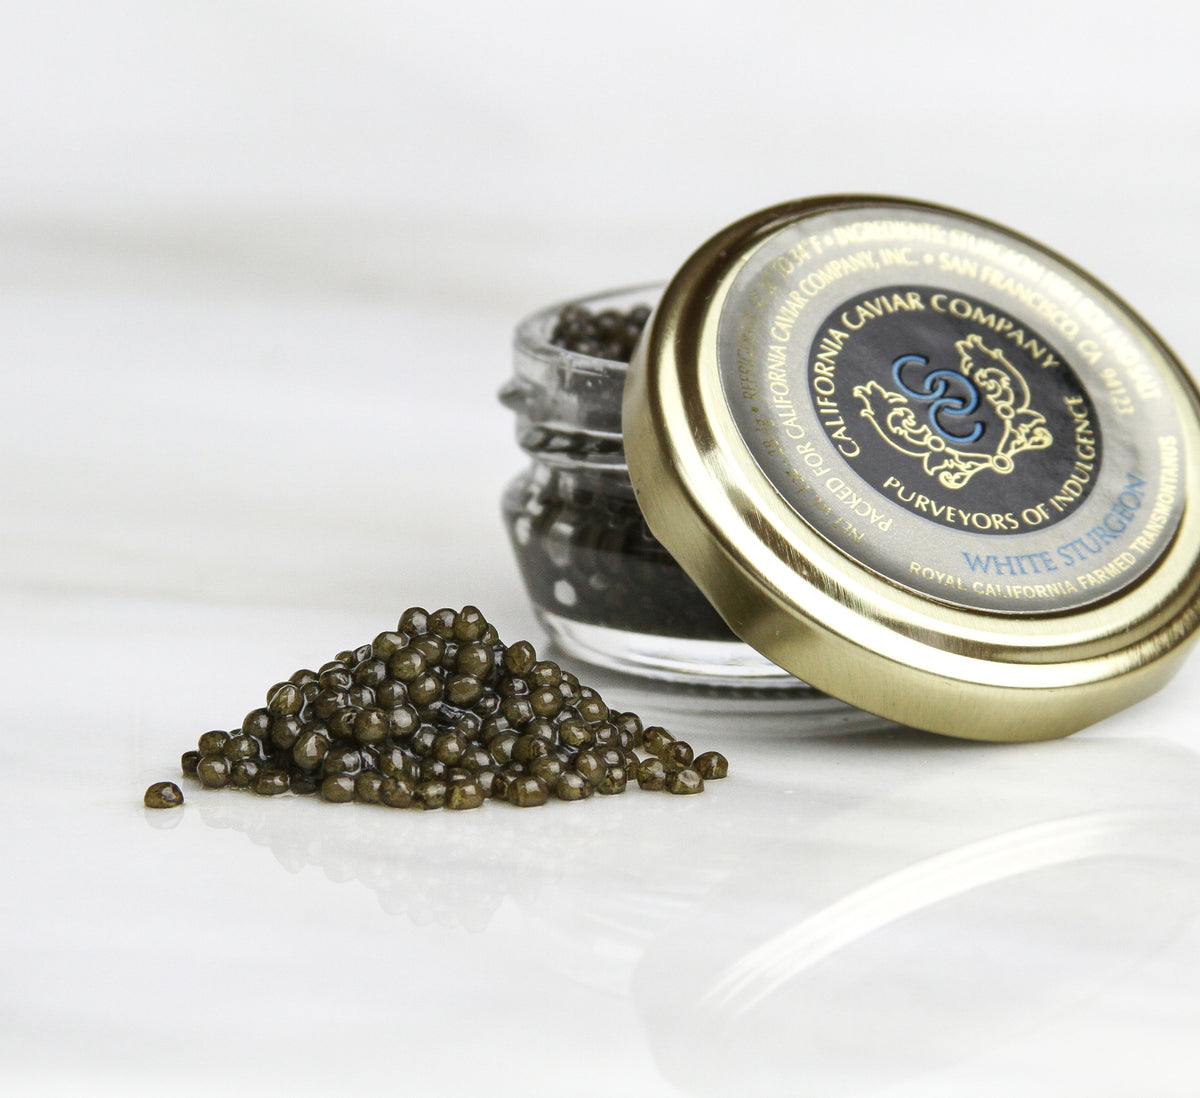 White Sturgeon Caviar: Indulging in Luxury Seafood